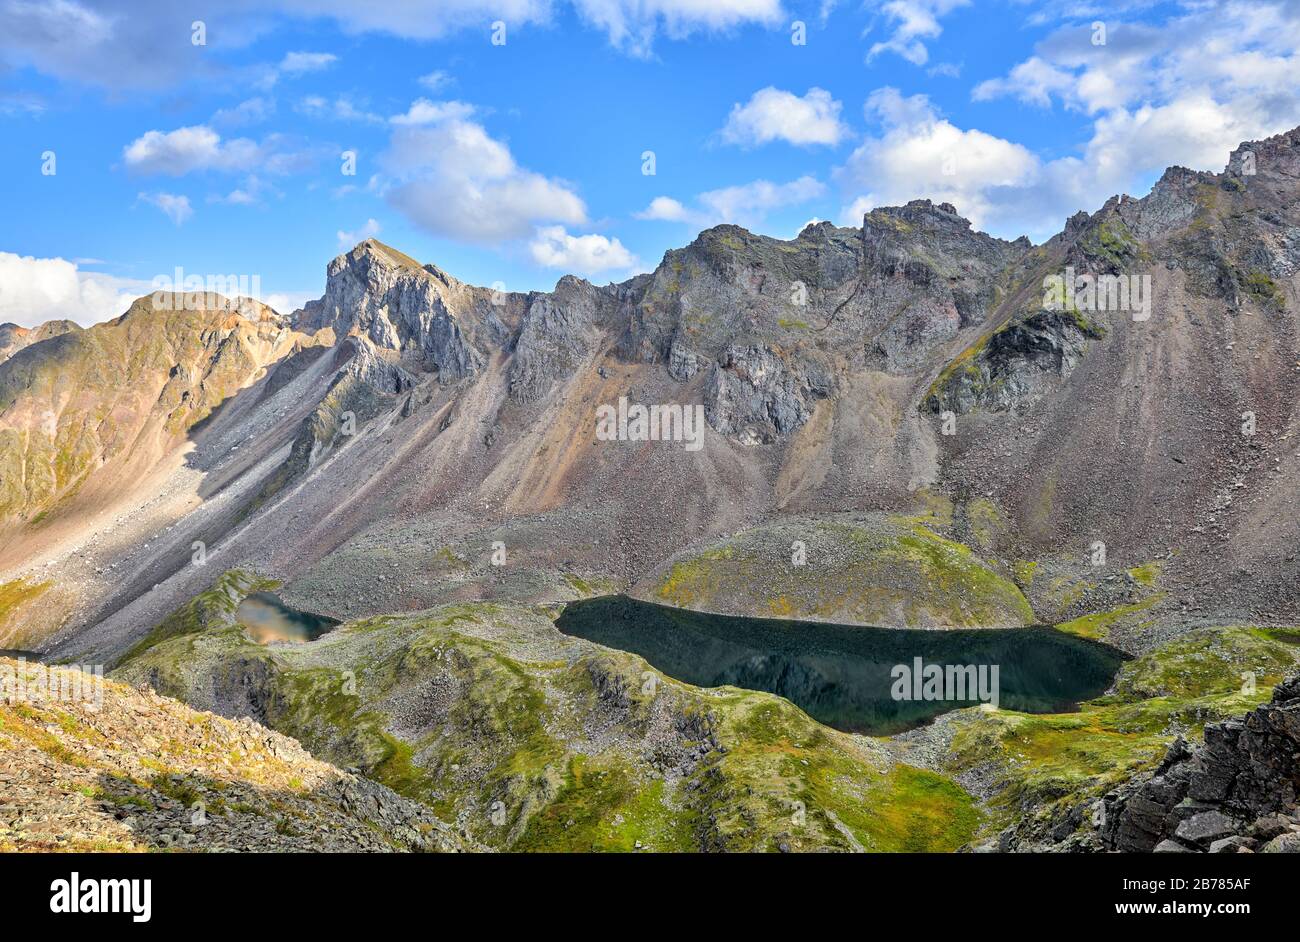 Profondo lago scuro in una valle sospesa sotto una catena montuosa. Diversi laghi si trovano a pochi passi. Sayan orientale. Russia Foto Stock